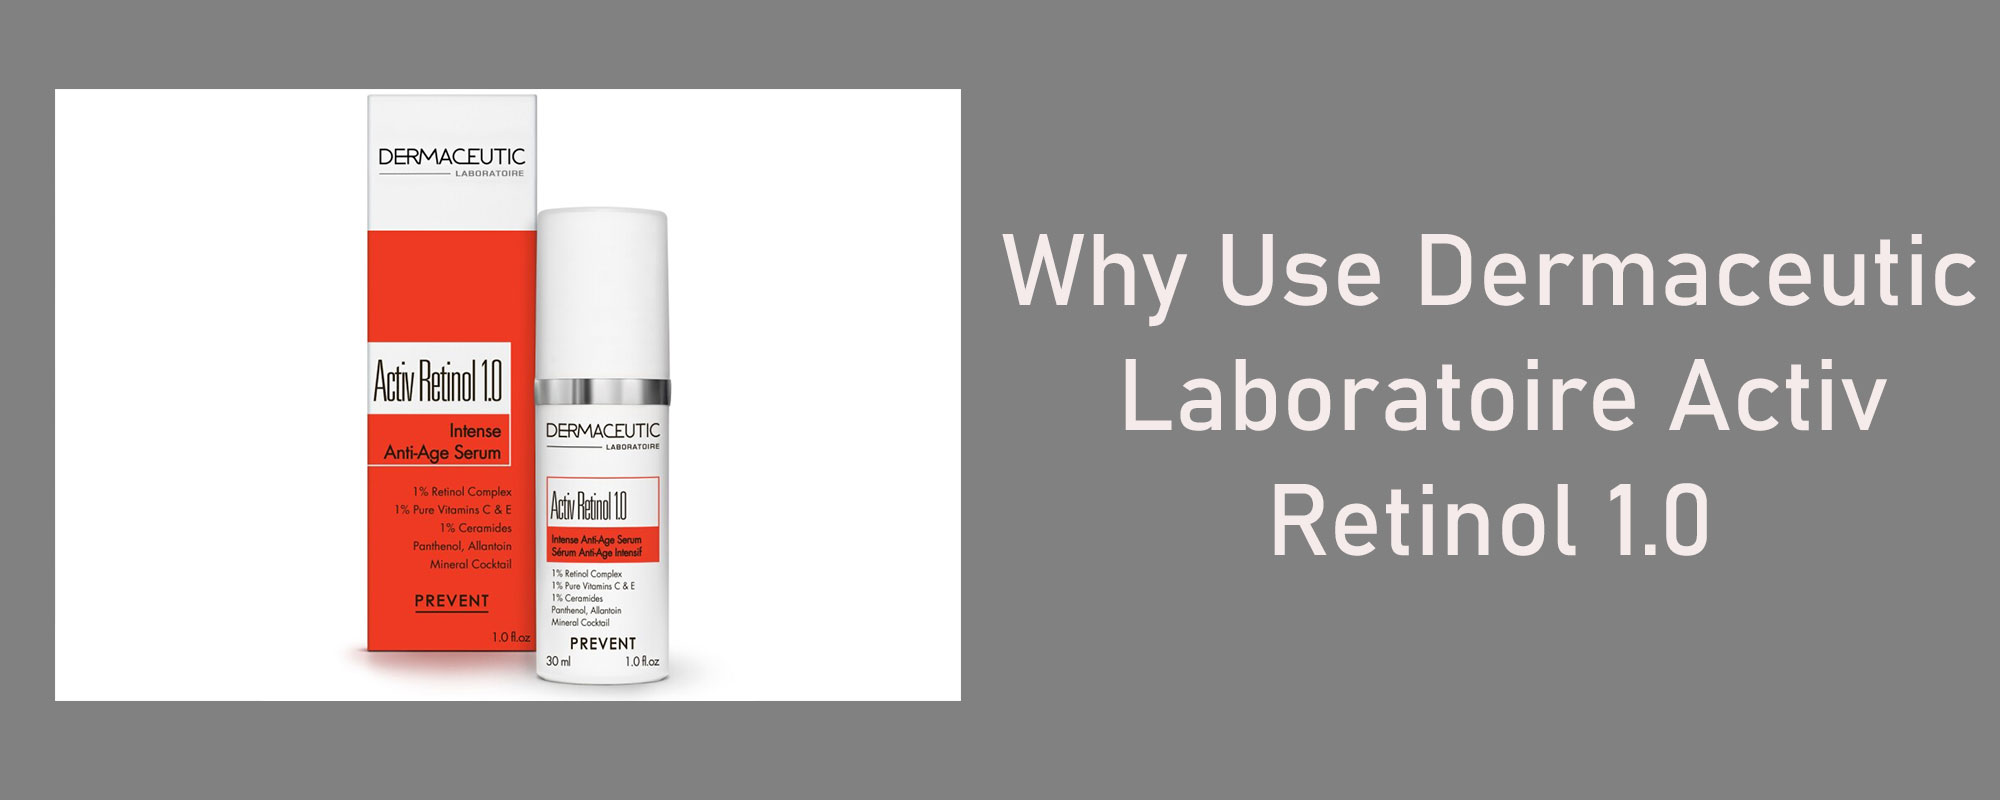 Why Use Dermaceutic Laboratoire Activ Retinol 1.0 - 1